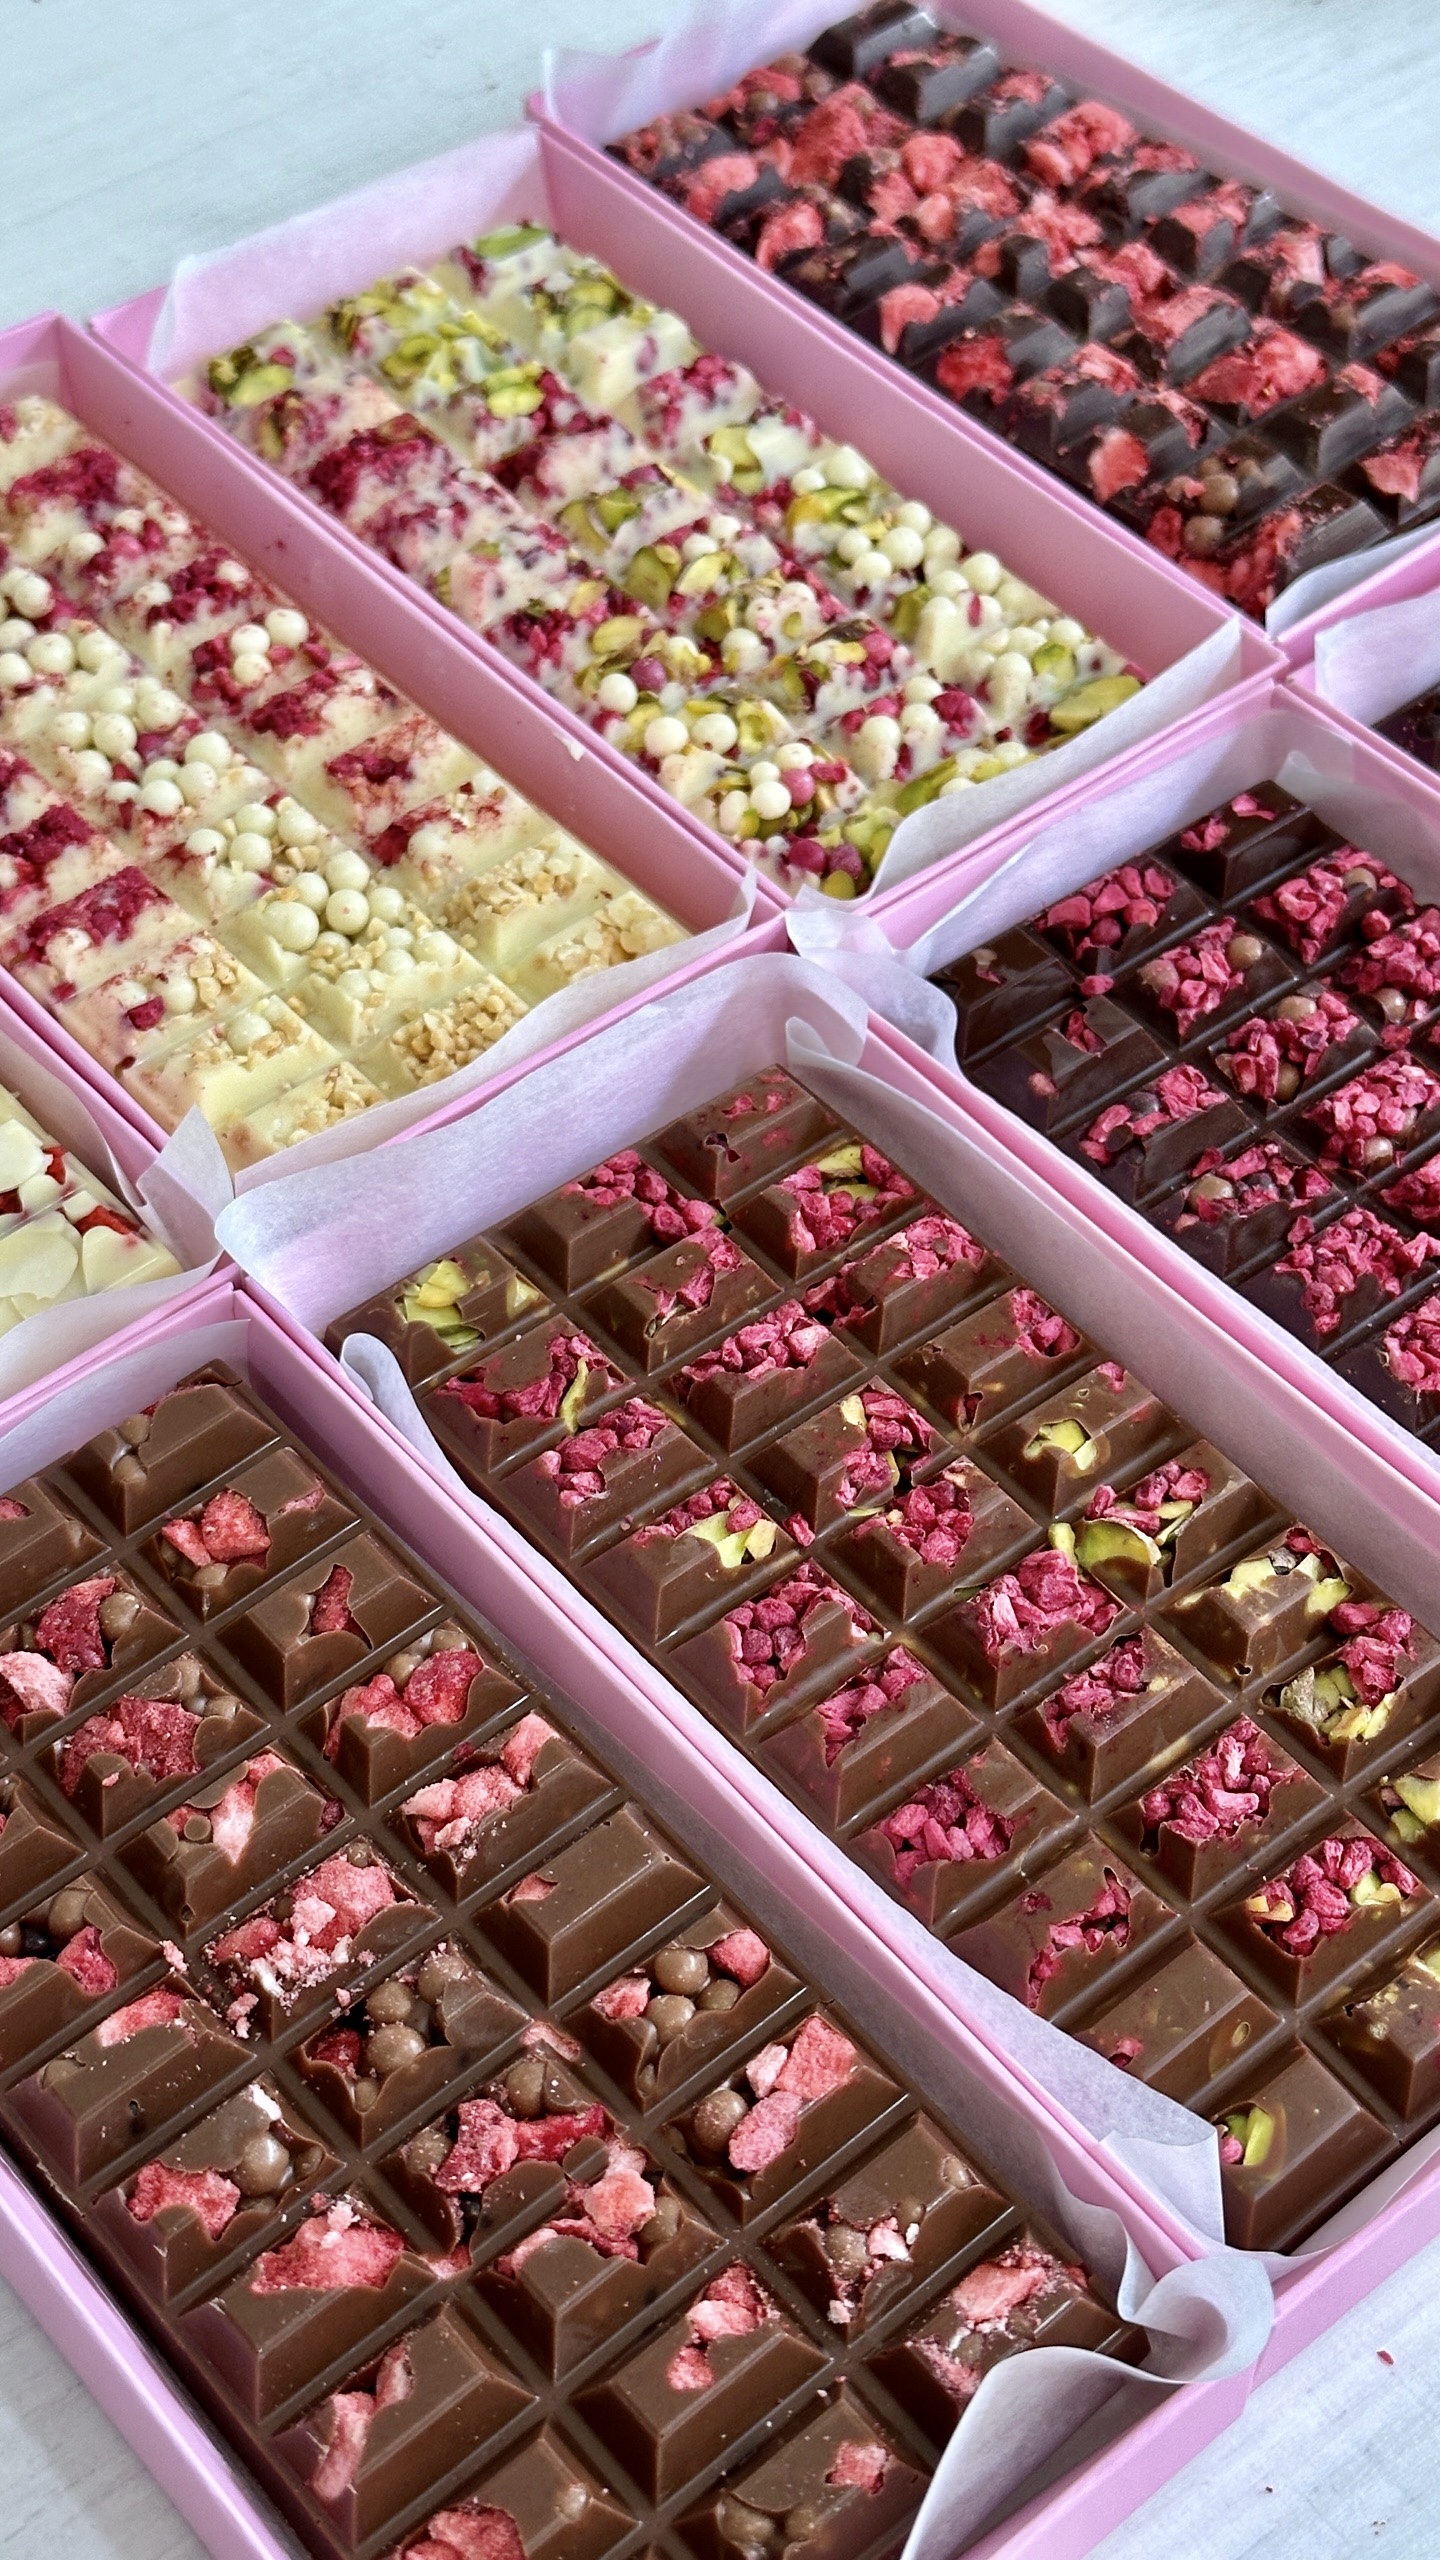 Производство изготовление шоколада, конфет ручной работы из настоящего 100% бельгийского шоколада